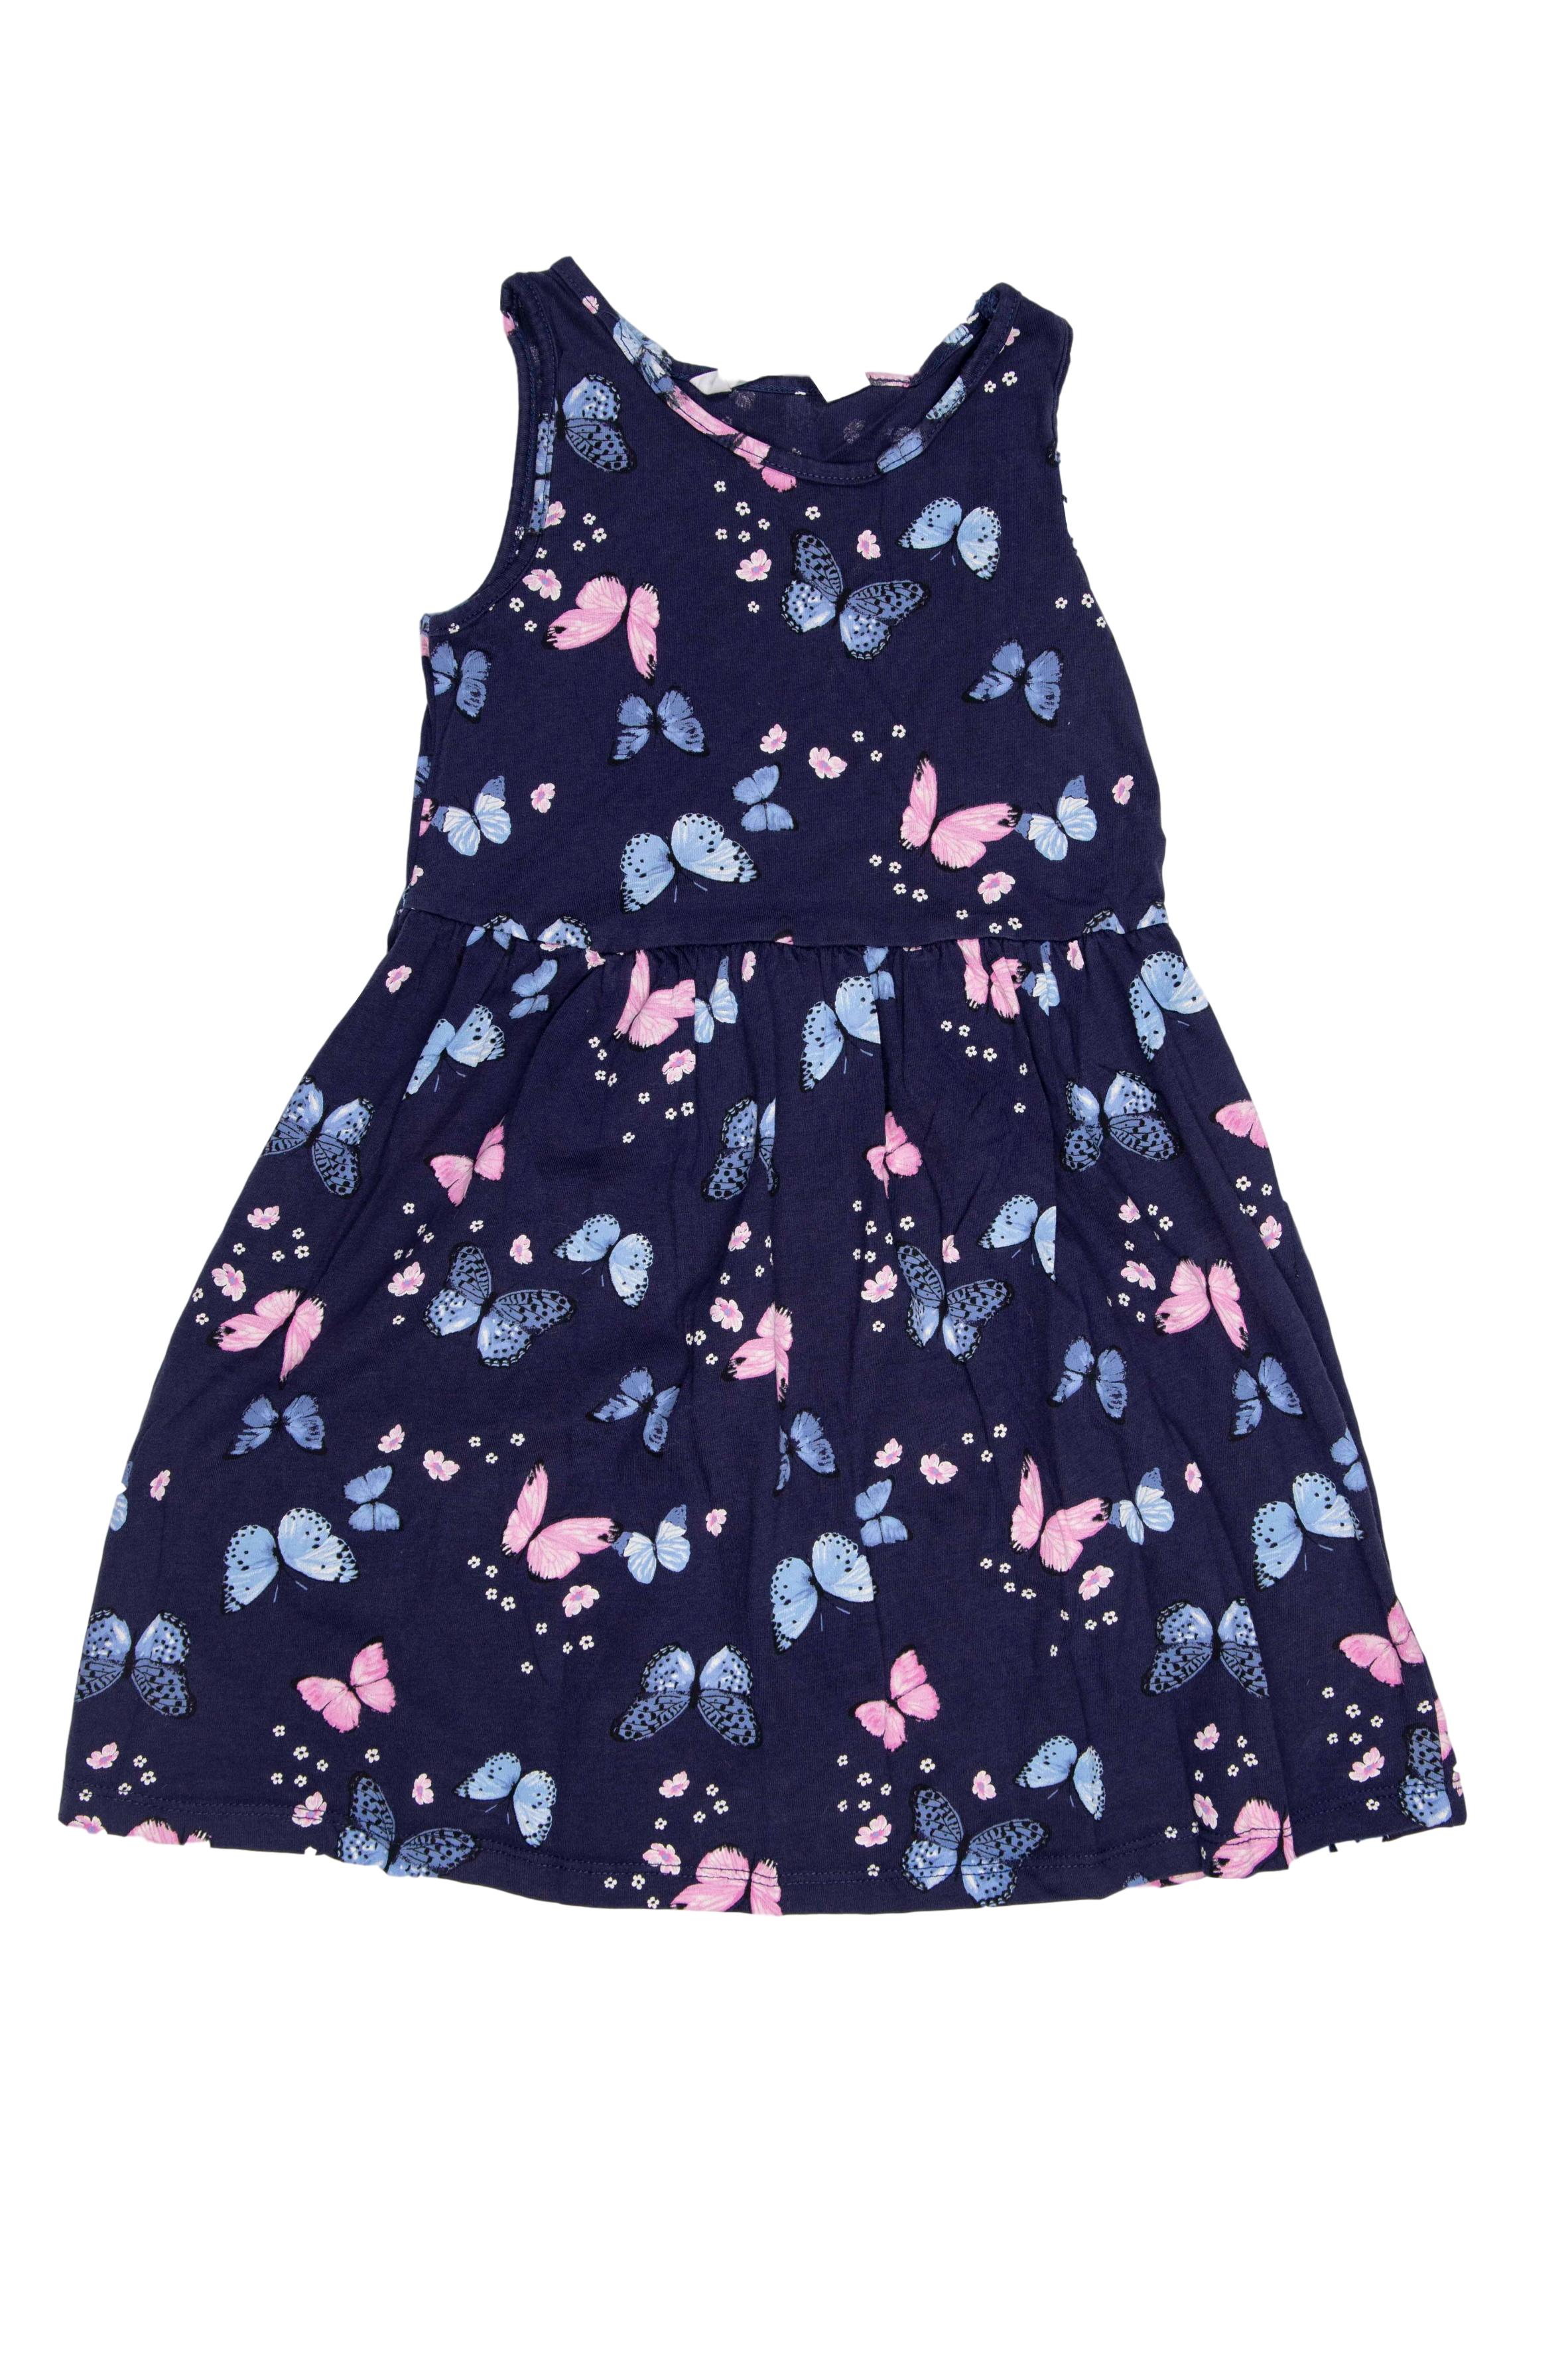 Vestido azul con mariposas y florcitas 100% algodón (etiqueta: 4 - 6 años) - H & M